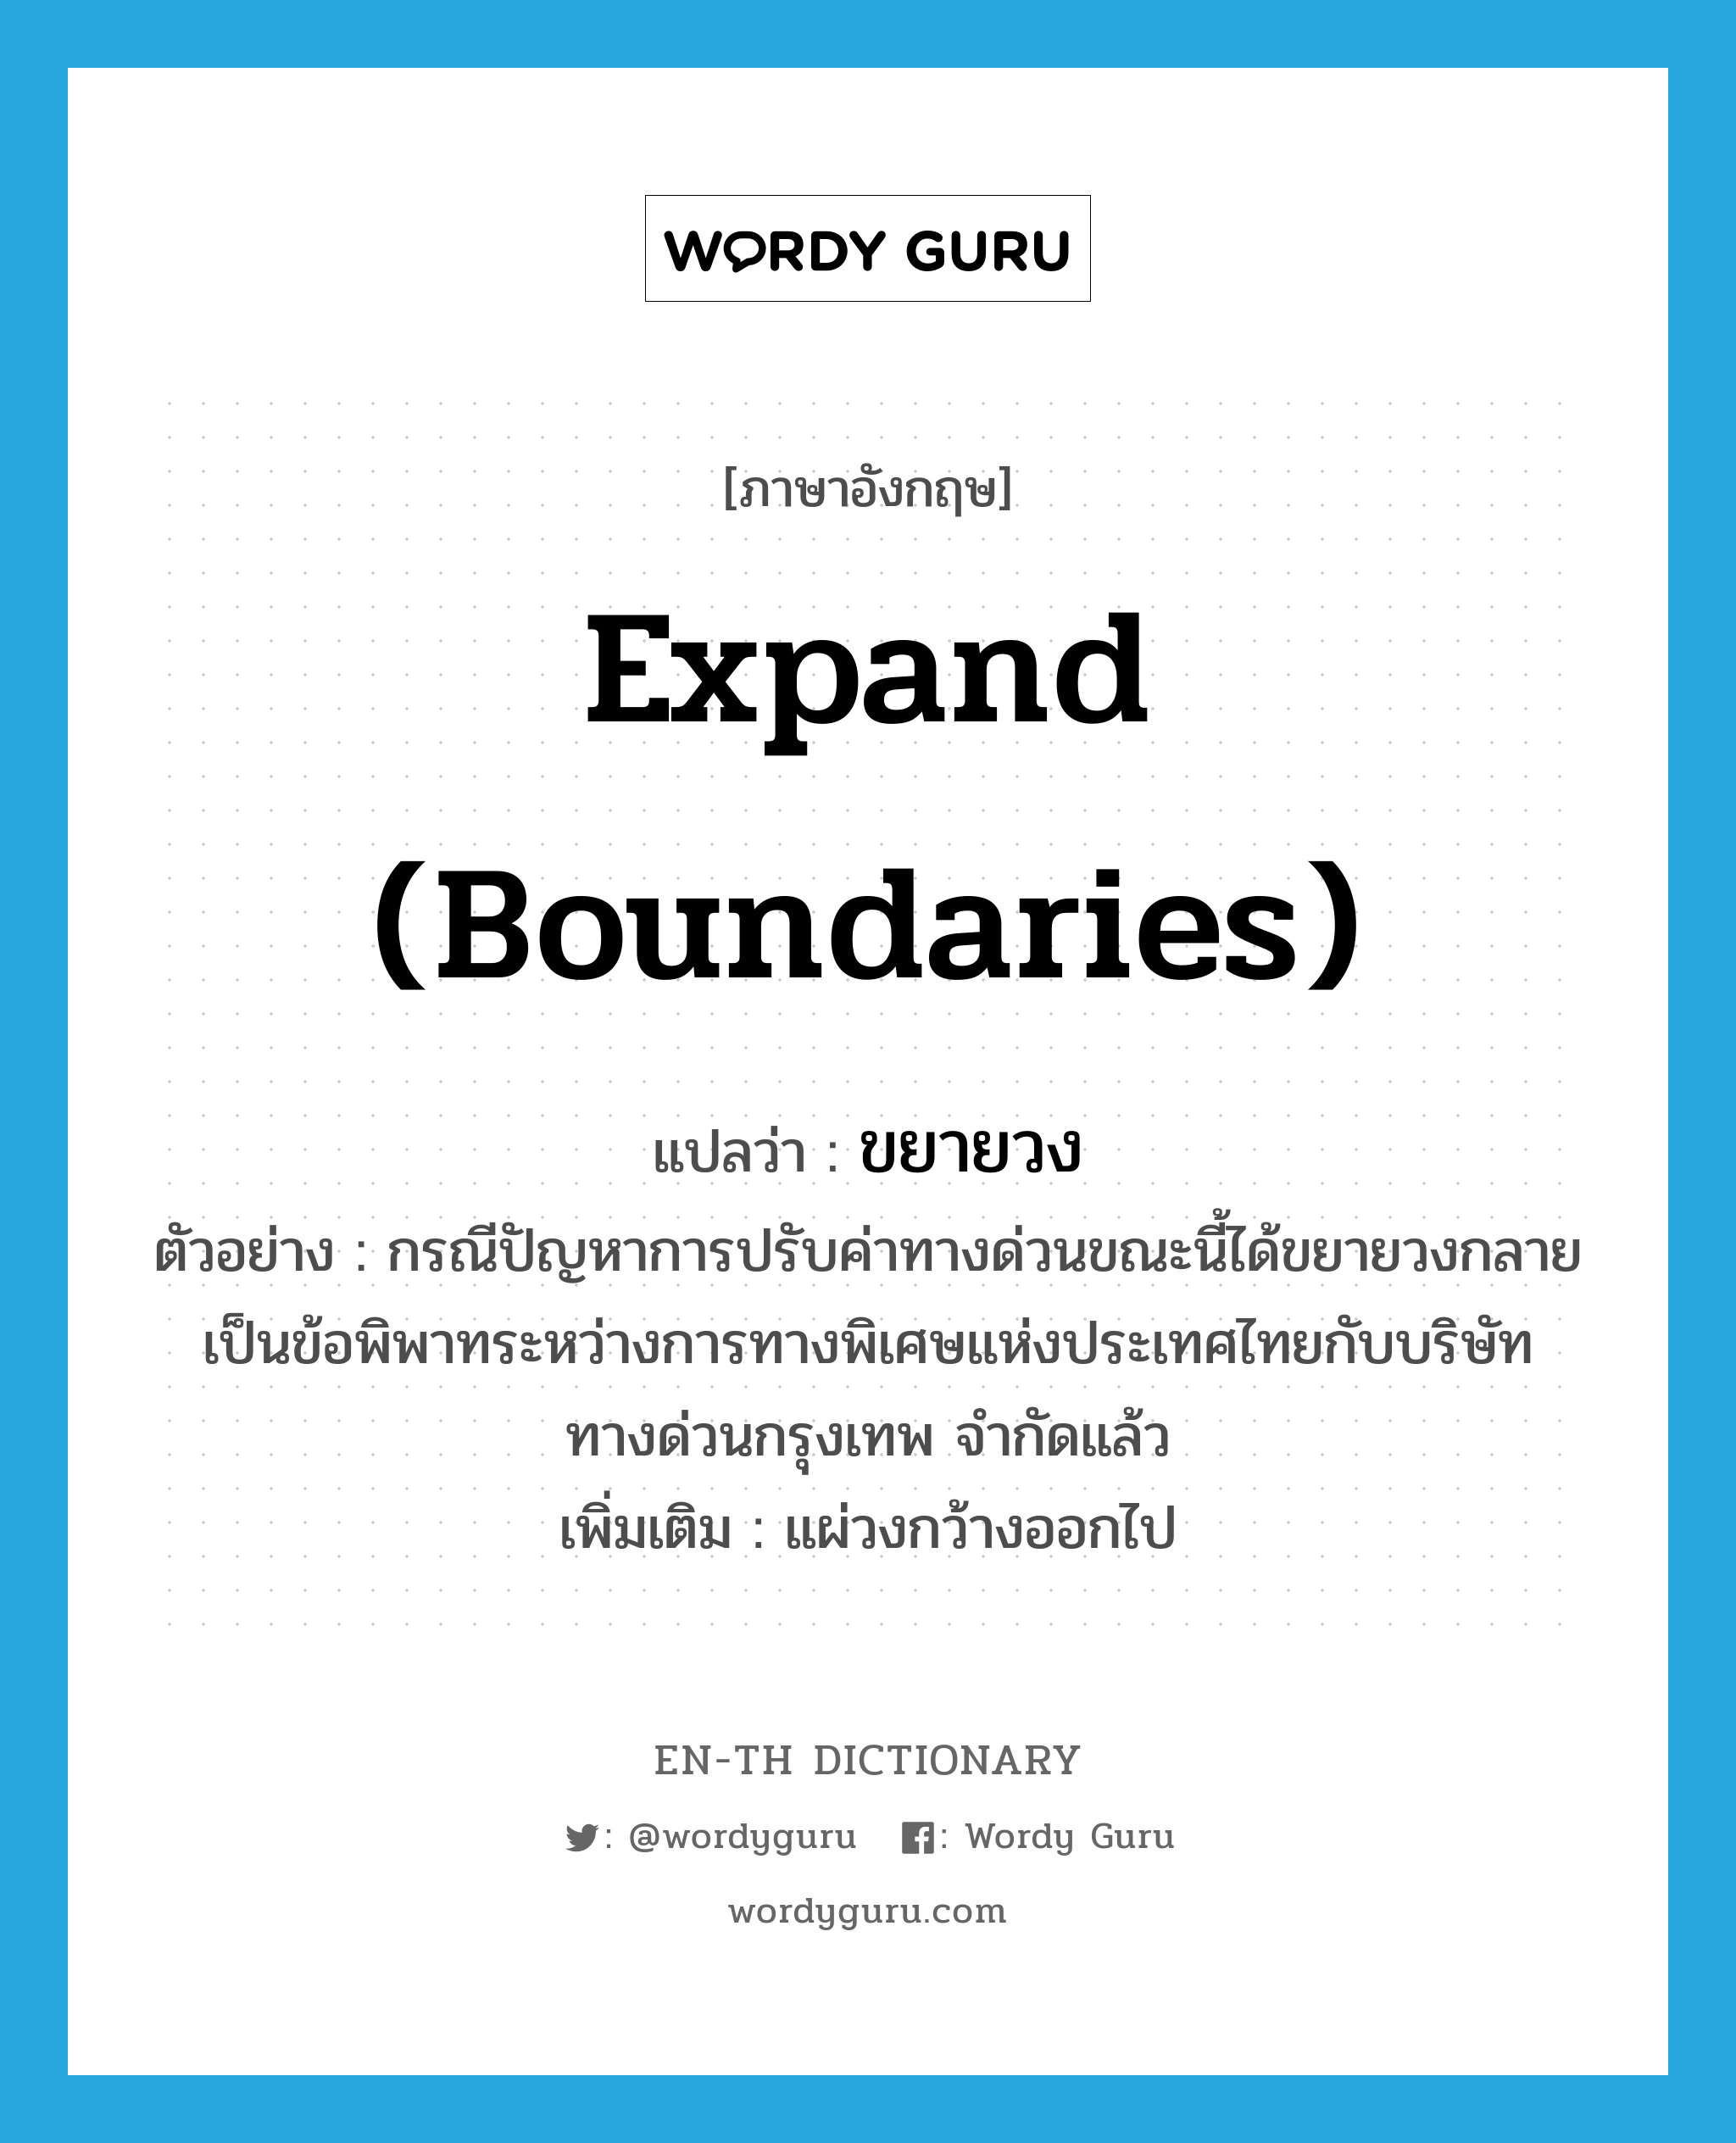 expand (boundaries) แปลว่า?, คำศัพท์ภาษาอังกฤษ expand (boundaries) แปลว่า ขยายวง ประเภท V ตัวอย่าง กรณีปัญหาการปรับค่าทางด่วนขณะนี้ได้ขยายวงกลายเป็นข้อพิพาทระหว่างการทางพิเศษแห่งประเทศไทยกับบริษัททางด่วนกรุงเทพ จำกัดแล้ว เพิ่มเติม แผ่วงกว้างออกไป หมวด V